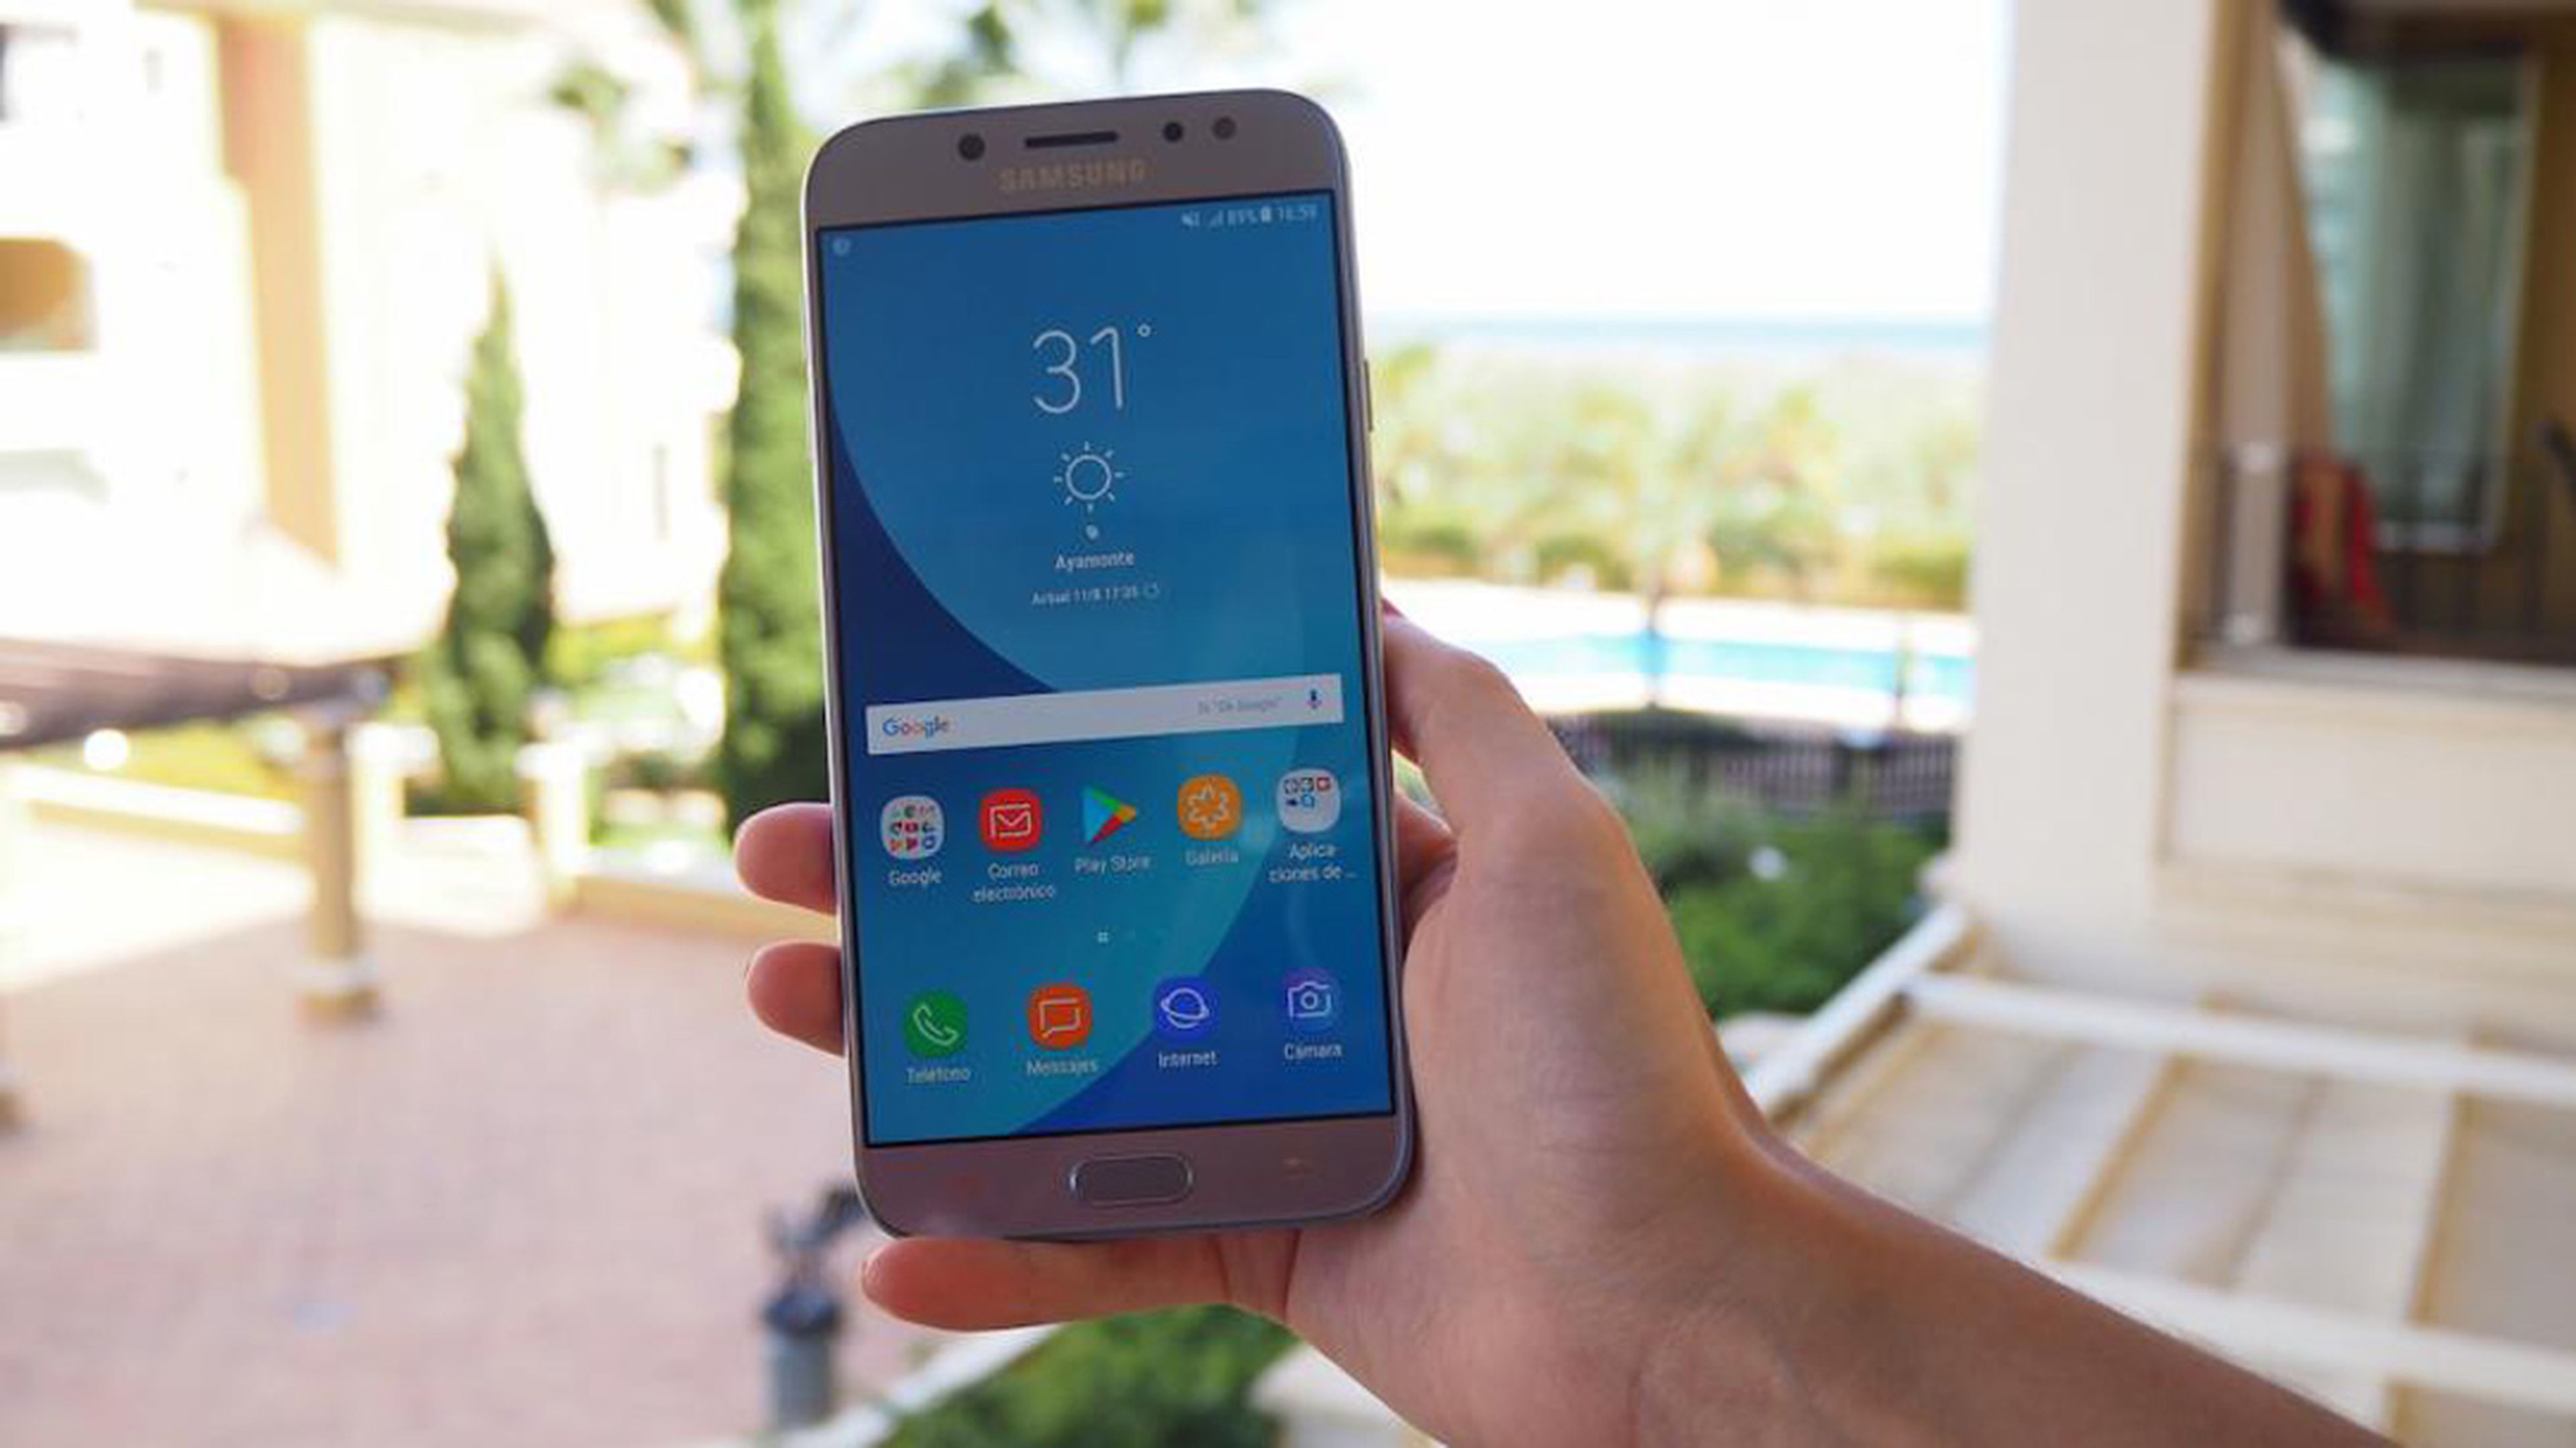 Samsung Galaxy J7 2017, análisis con opiniones